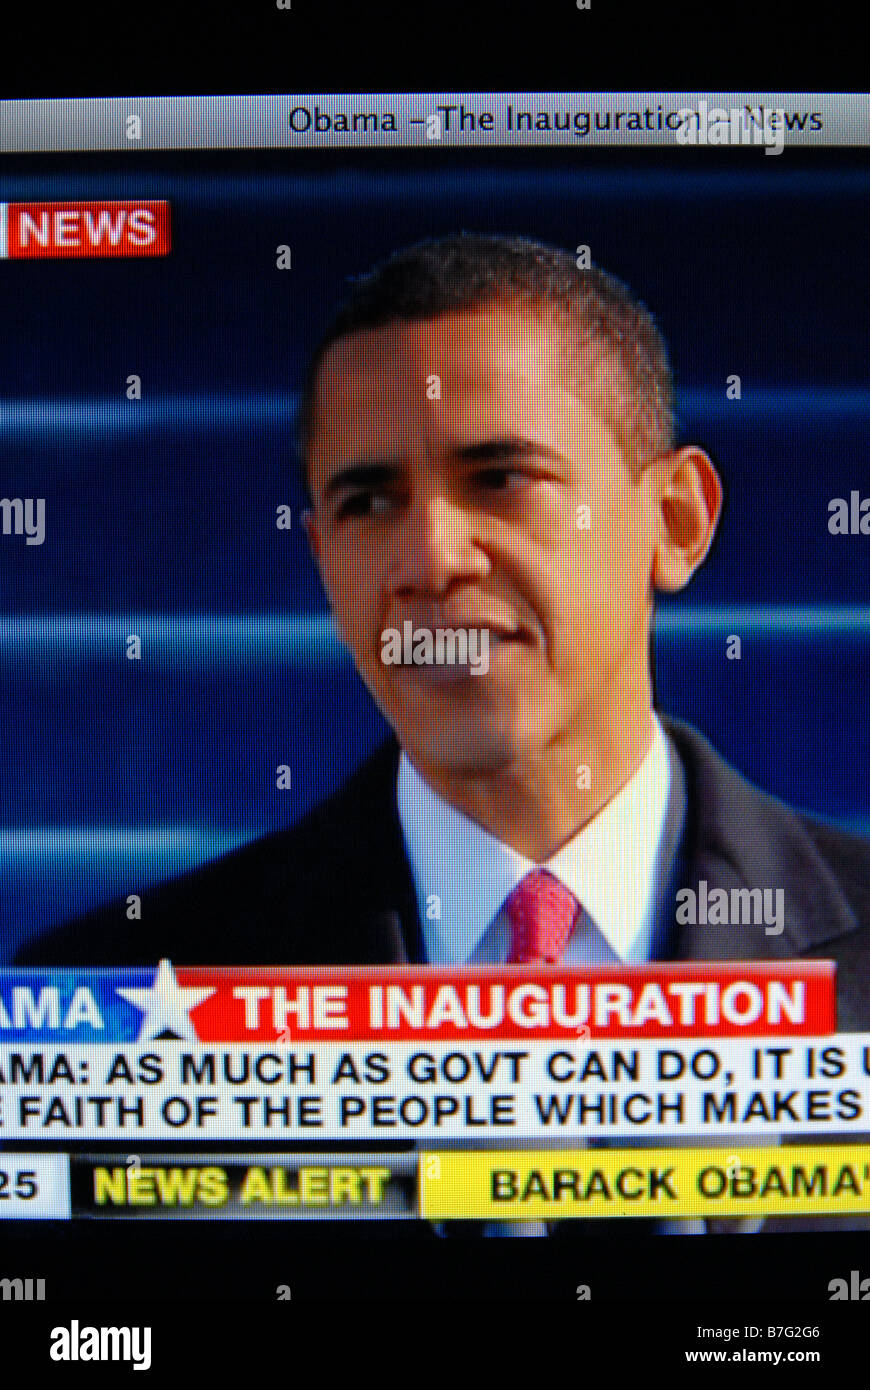 Der historische Amtseinführung von Barack Obama am 20. Januar 2009 Stockfoto